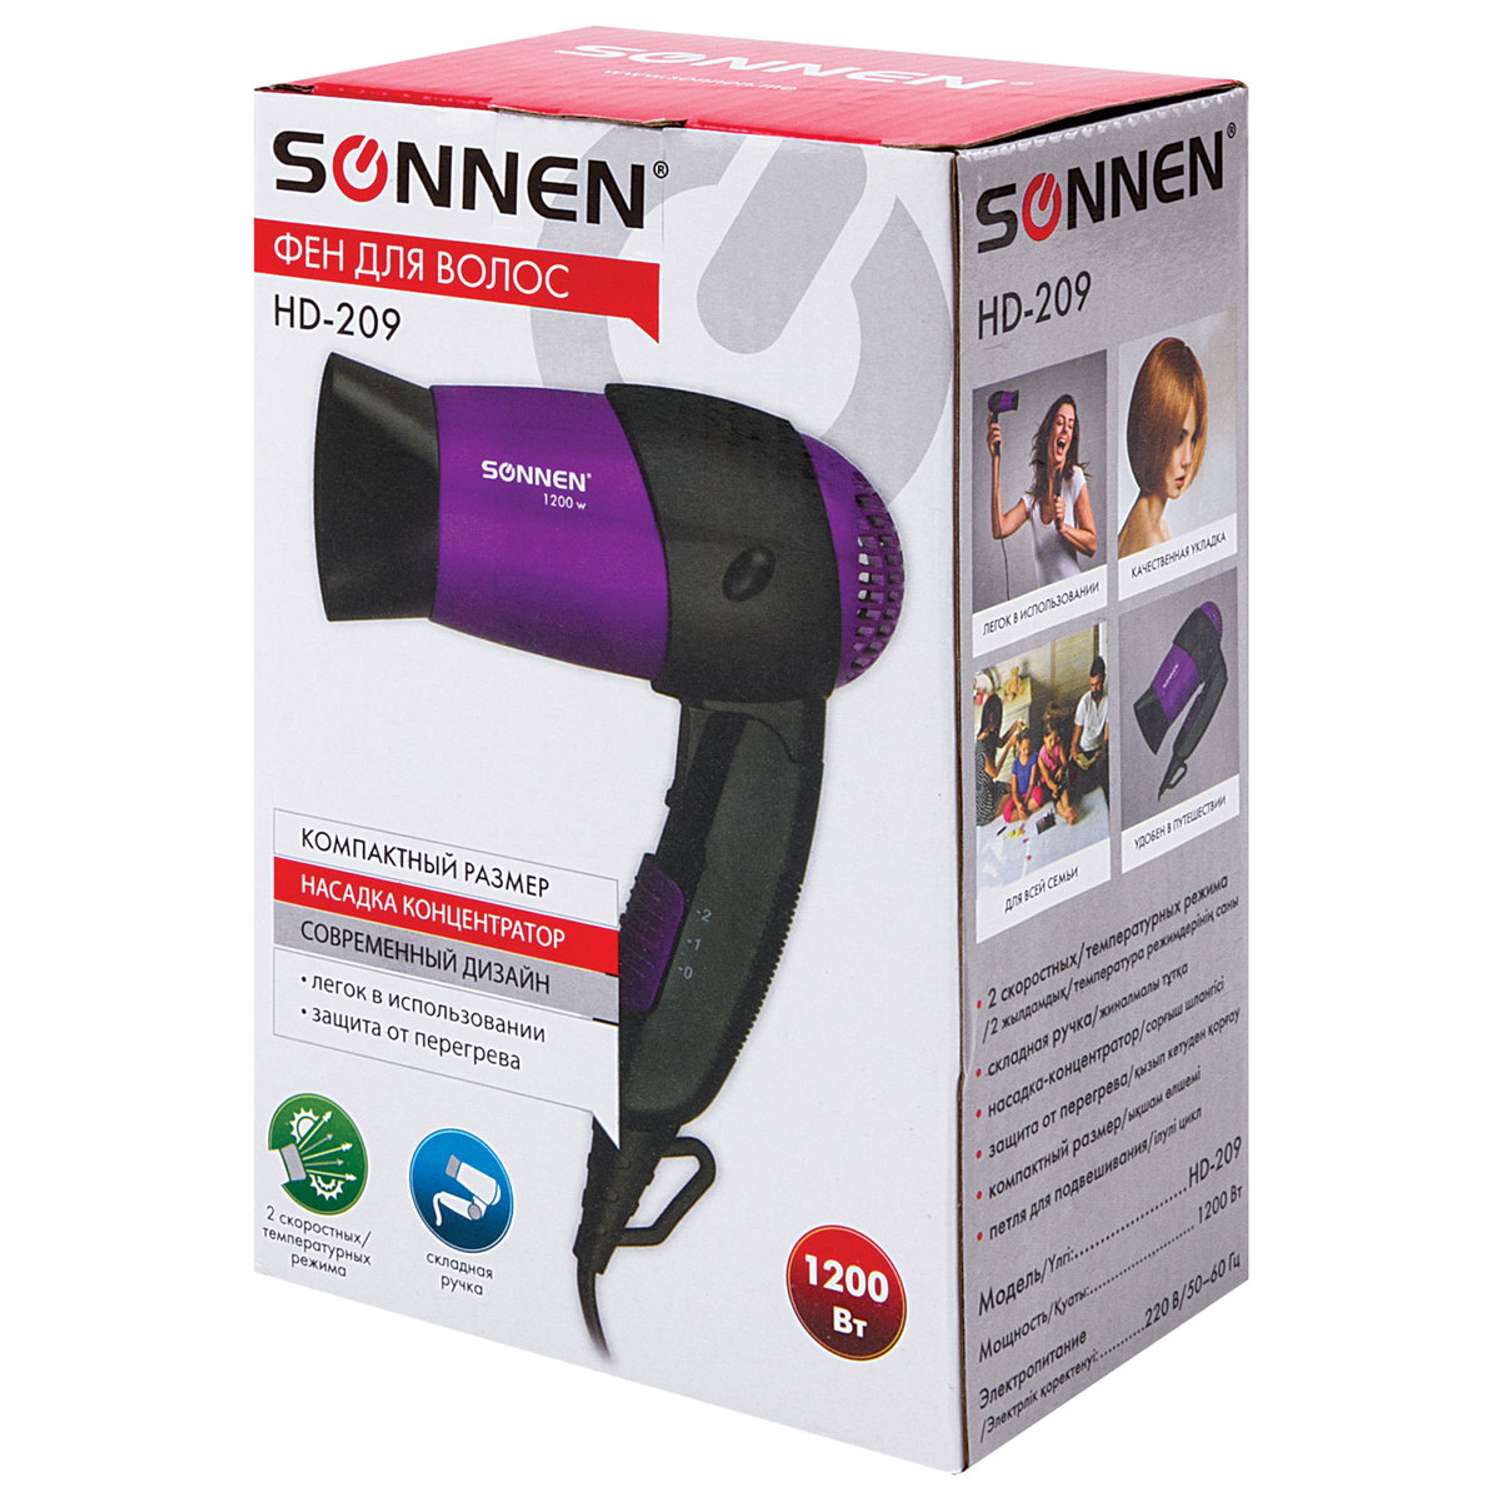 Фен Sonnen HD-209 1200Вт черный/фиолетовый - фото 22